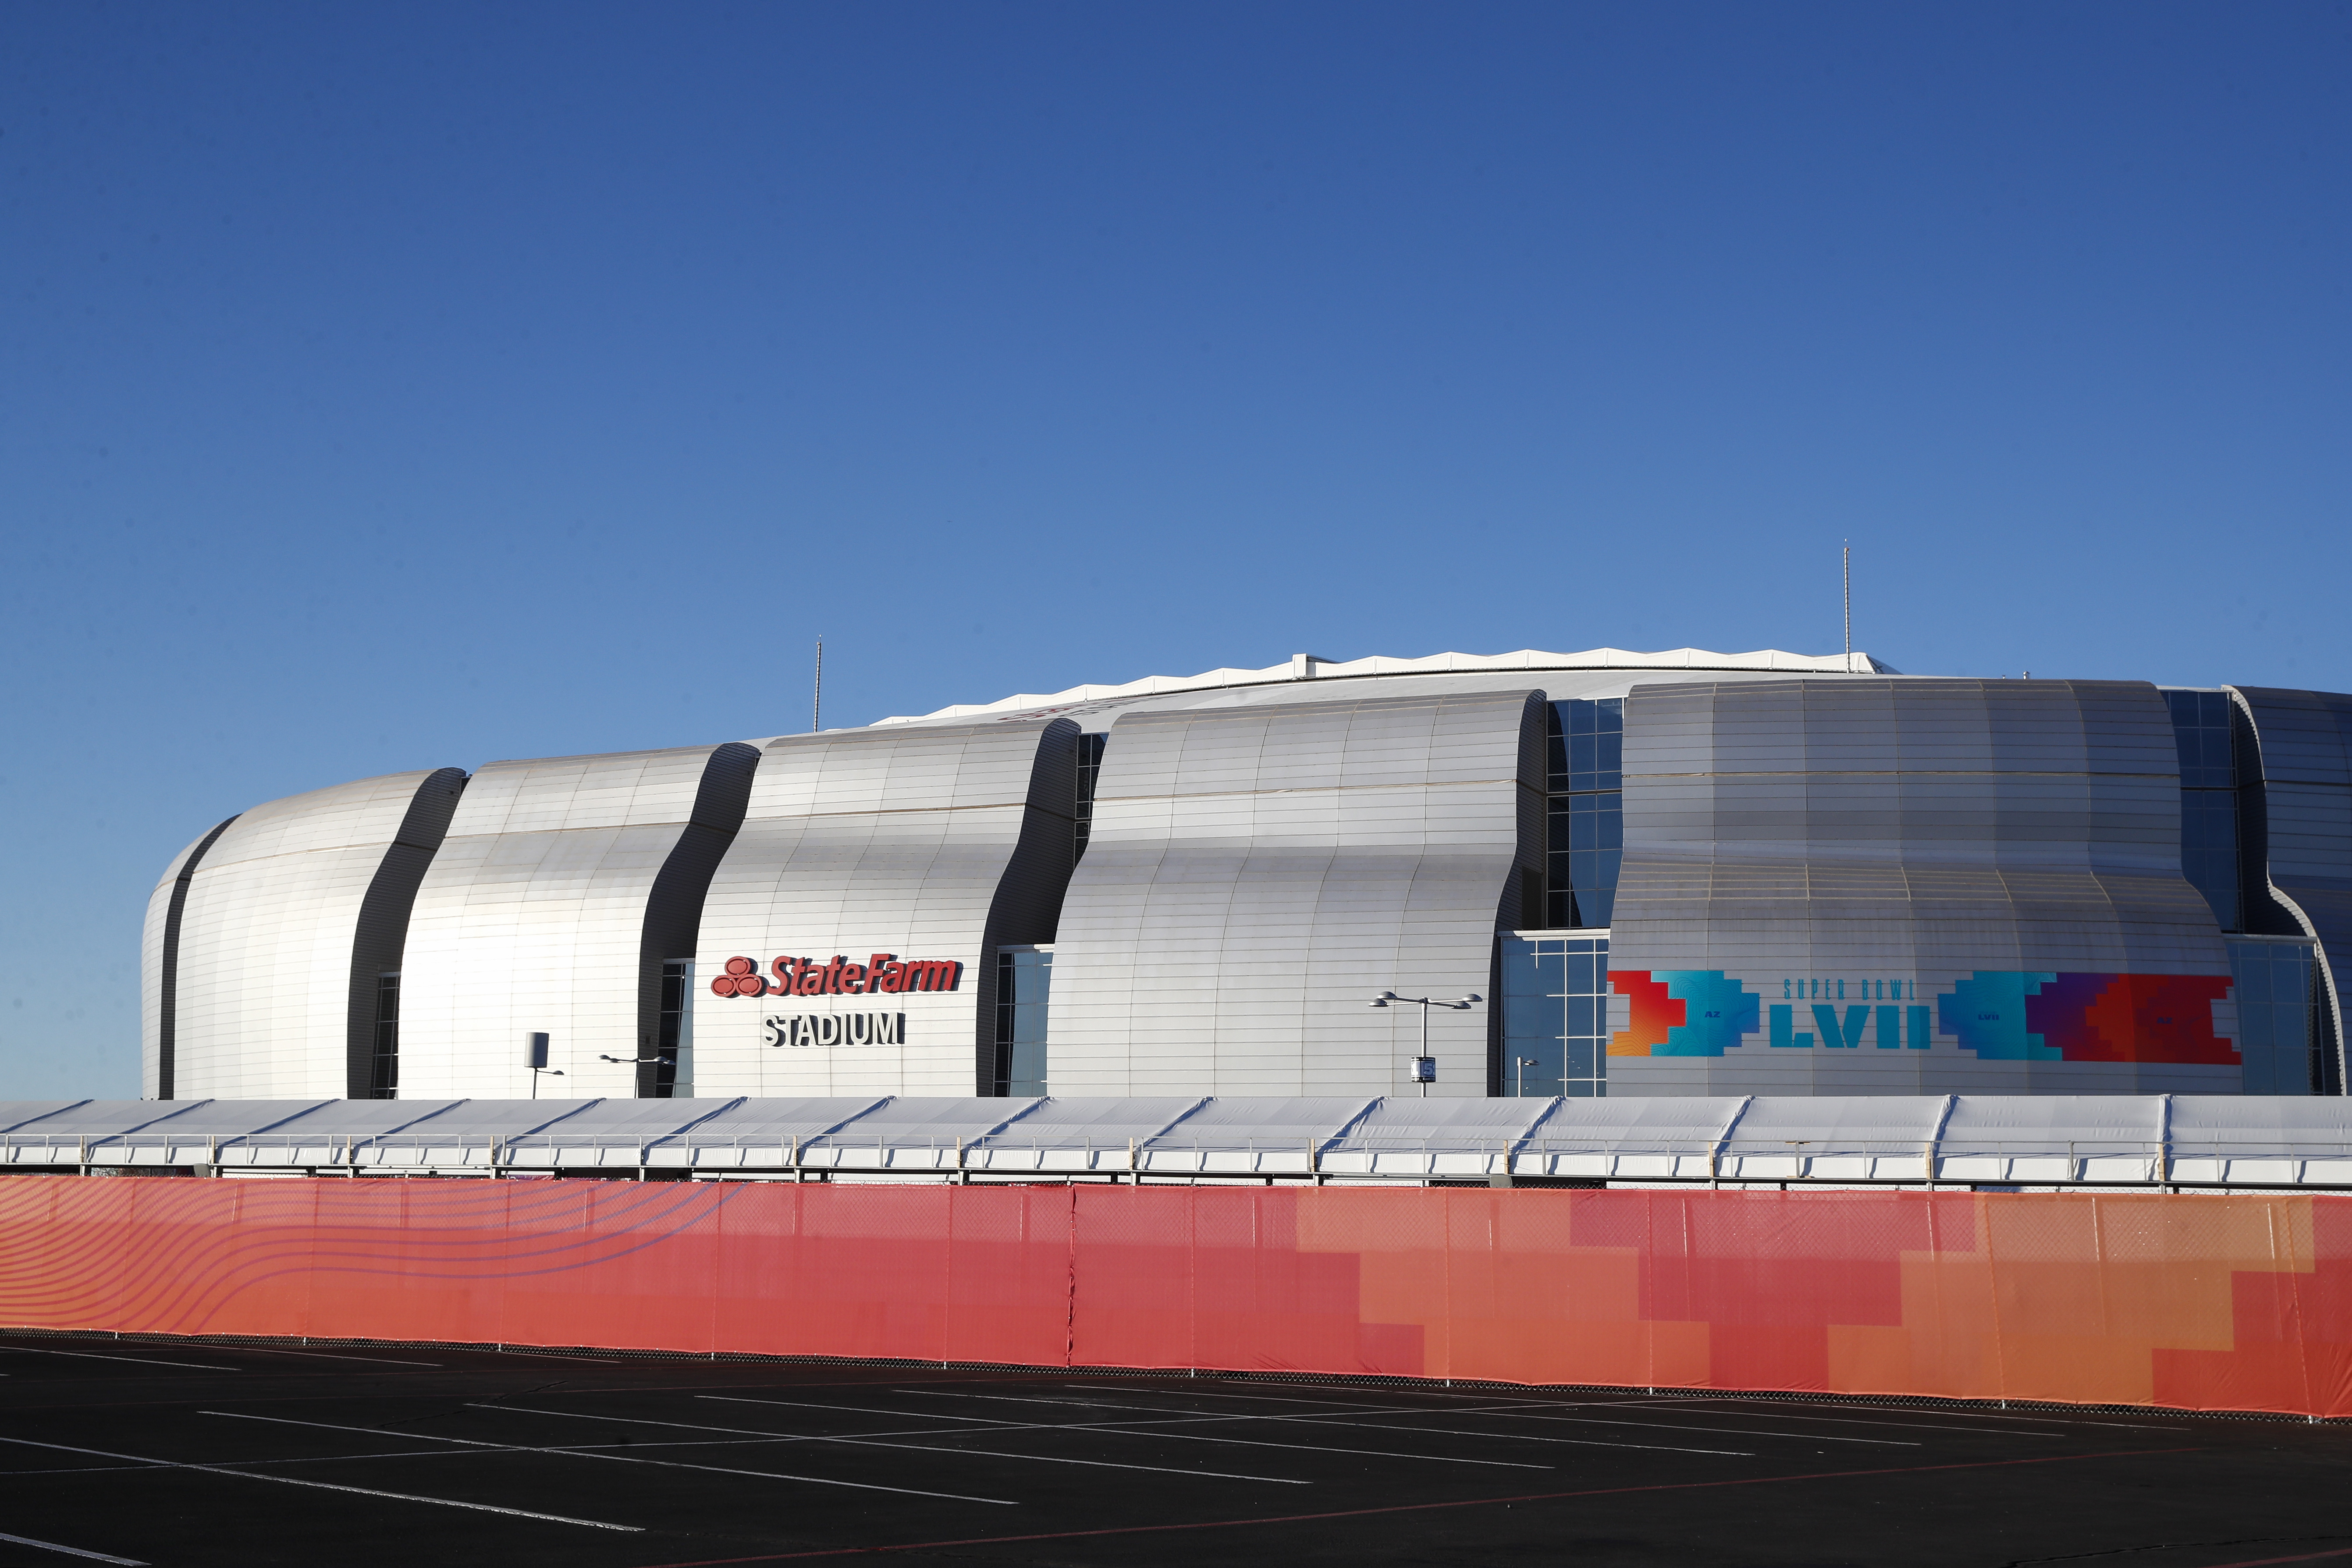 Así es el State Farm Stadium, estadio del Super Bowl LVII: dónde está, capacidad, césped, historia...